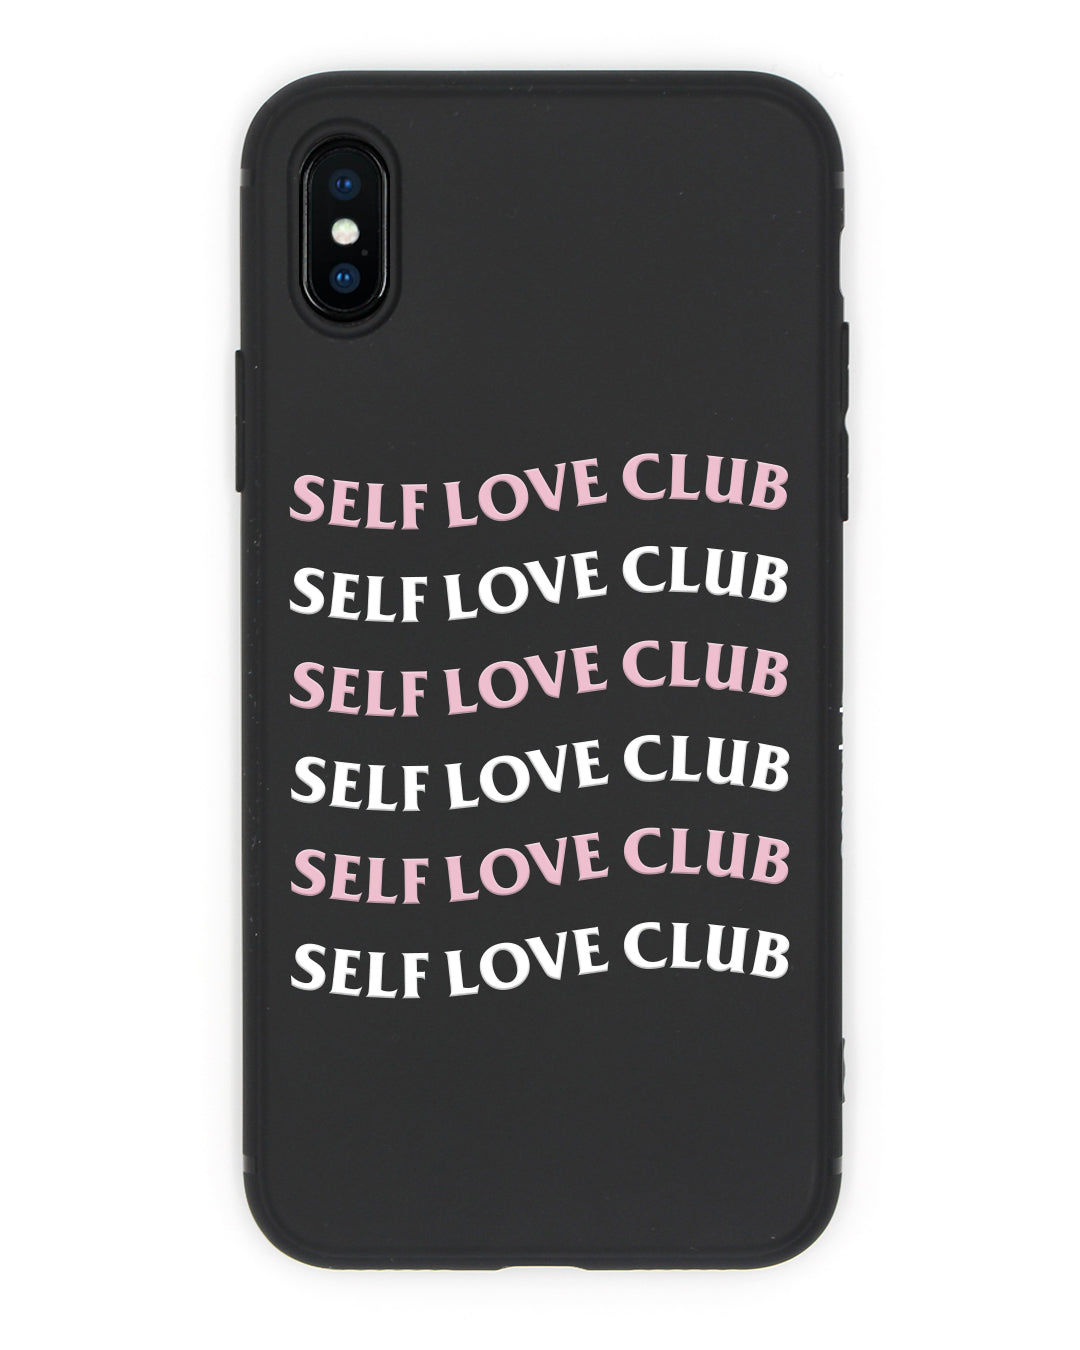 Self Love Club iPhone Case - Coverlab